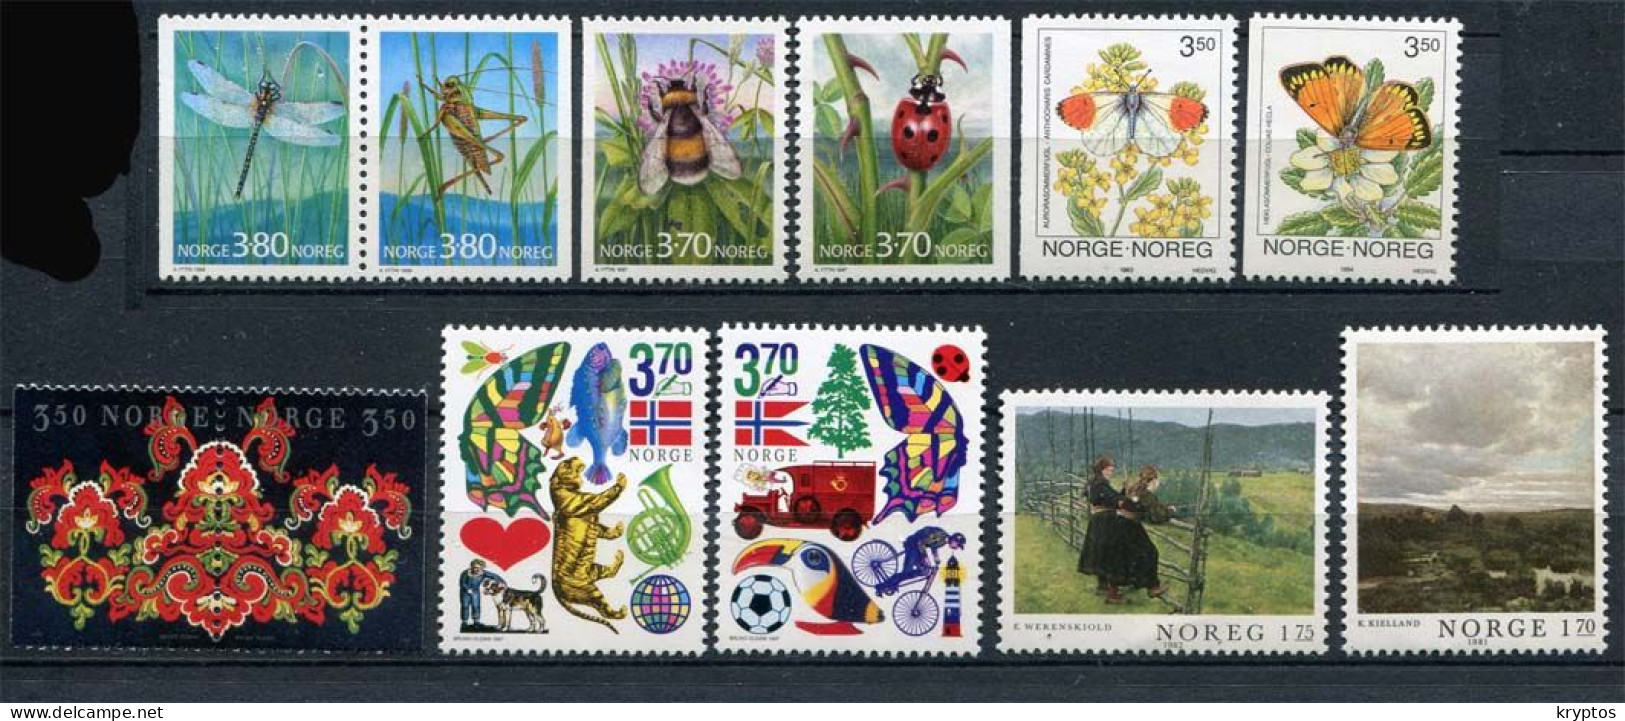 Norway 12 Stamps. ALL MINT** - Sammlungen